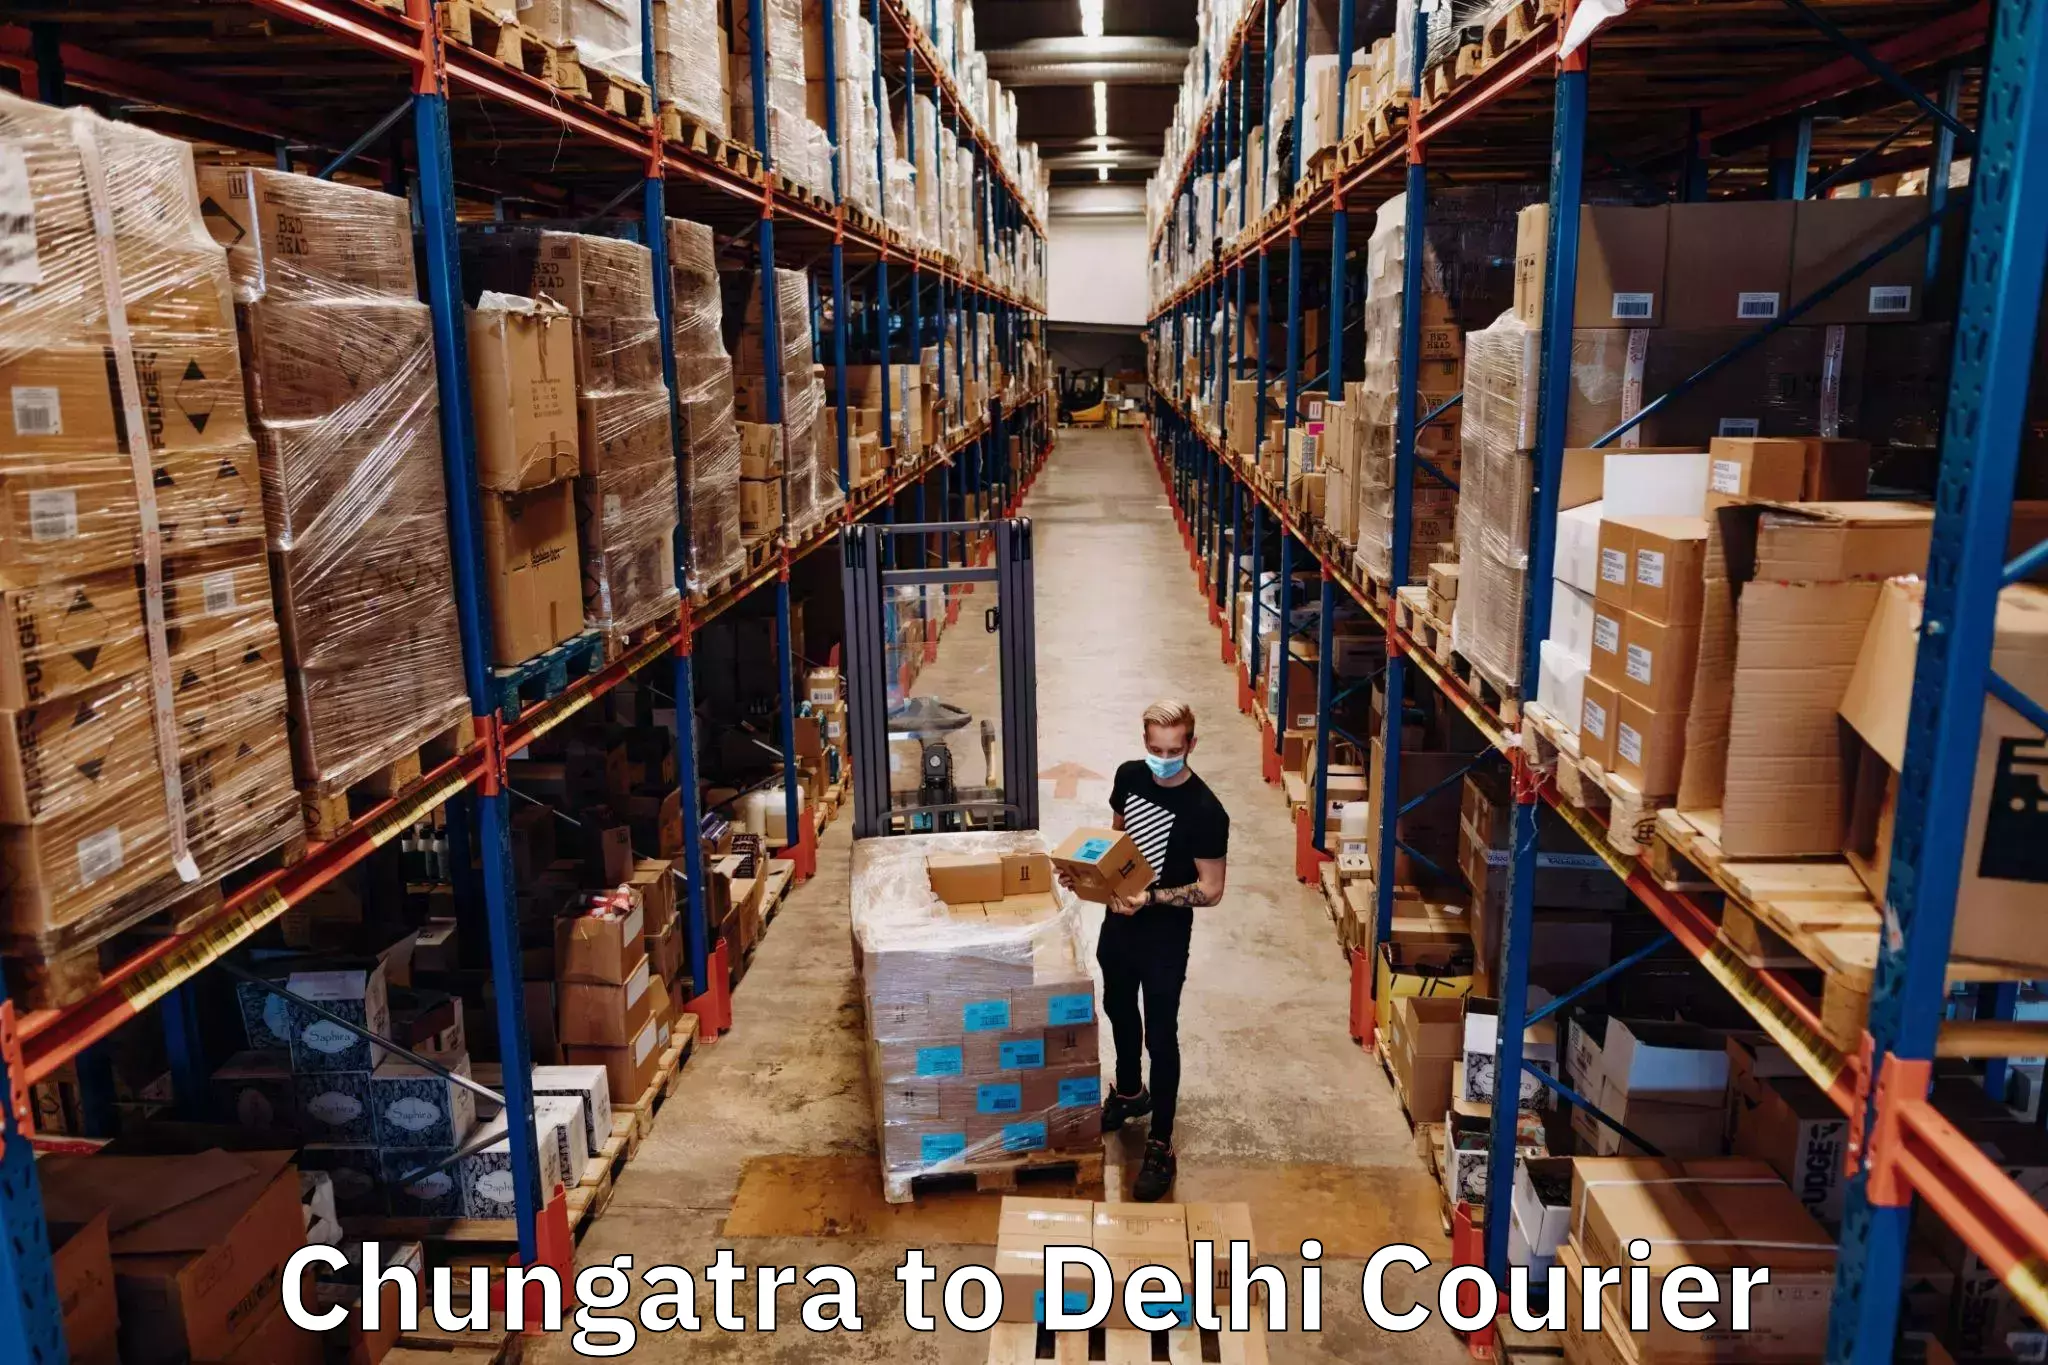 High-capacity parcel service Chungatra to Sarojini Nagar